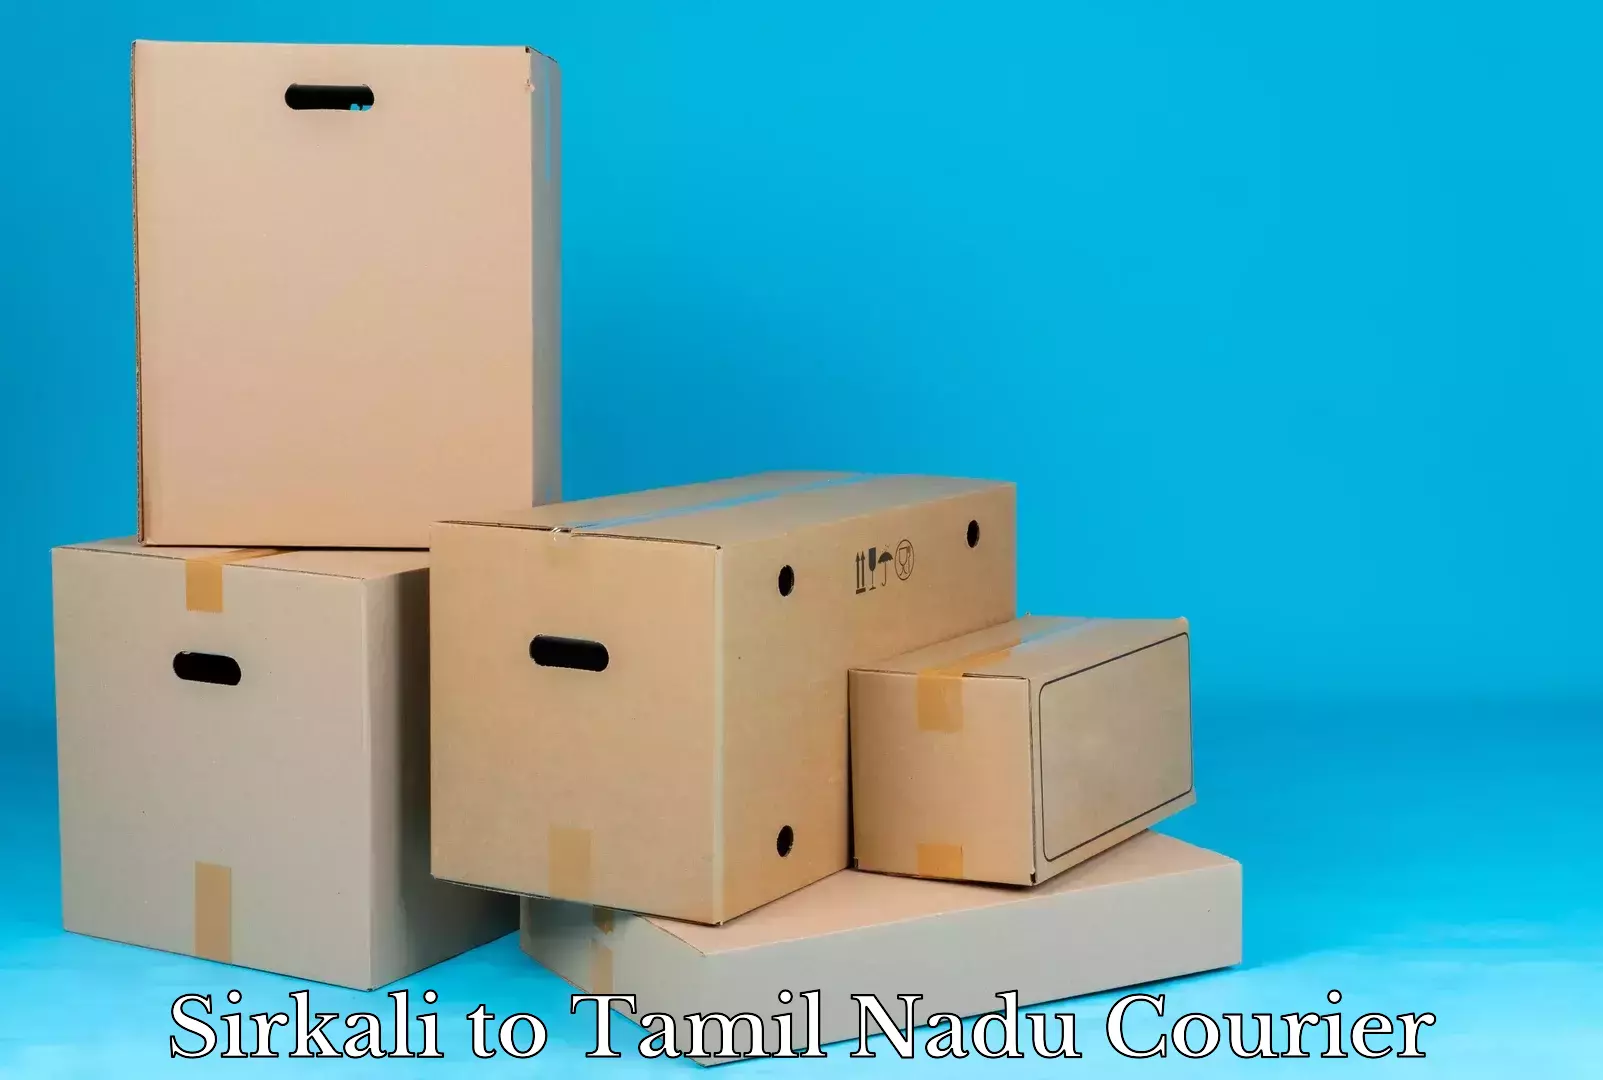 Furniture moving assistance Sirkali to Tamil Nadu